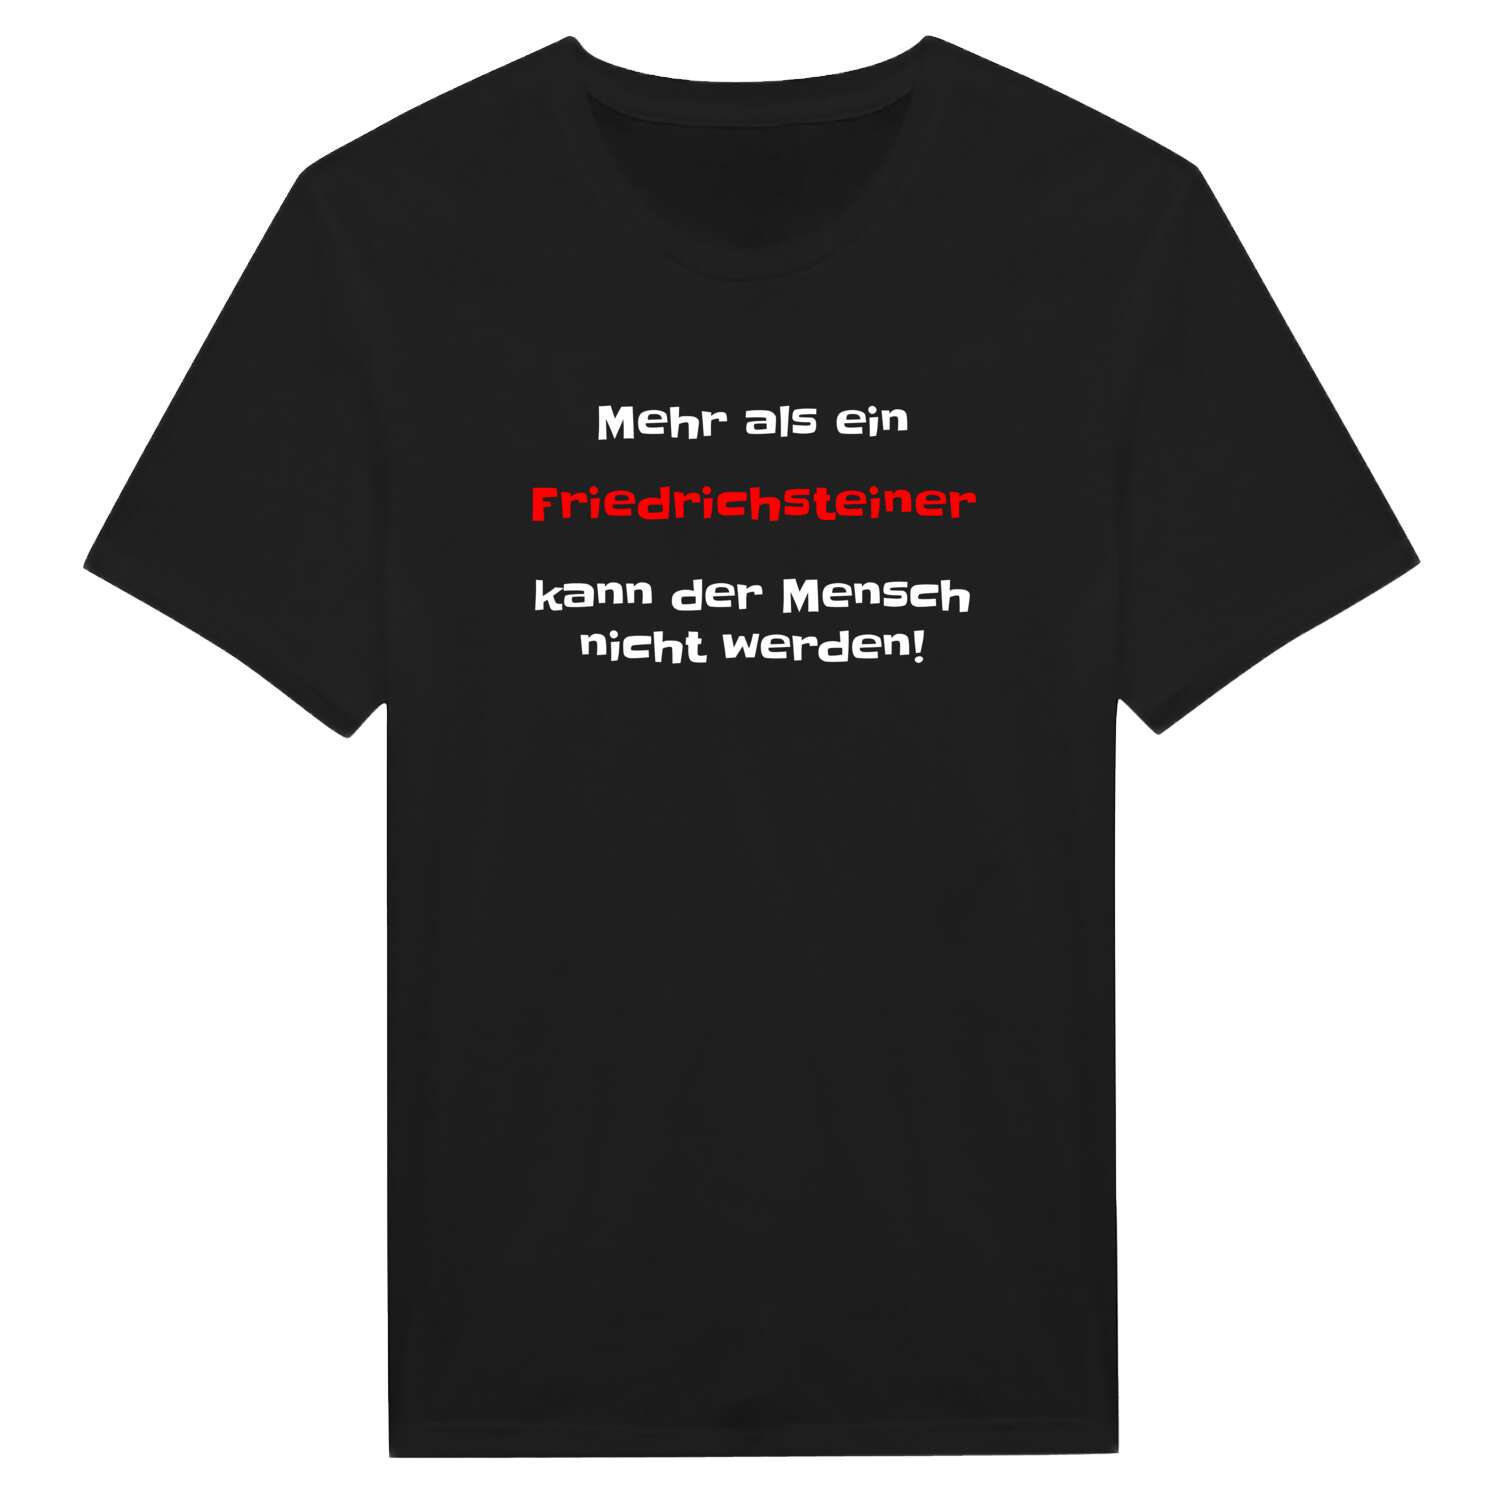 Friedrichstein T-Shirt »Mehr als ein«